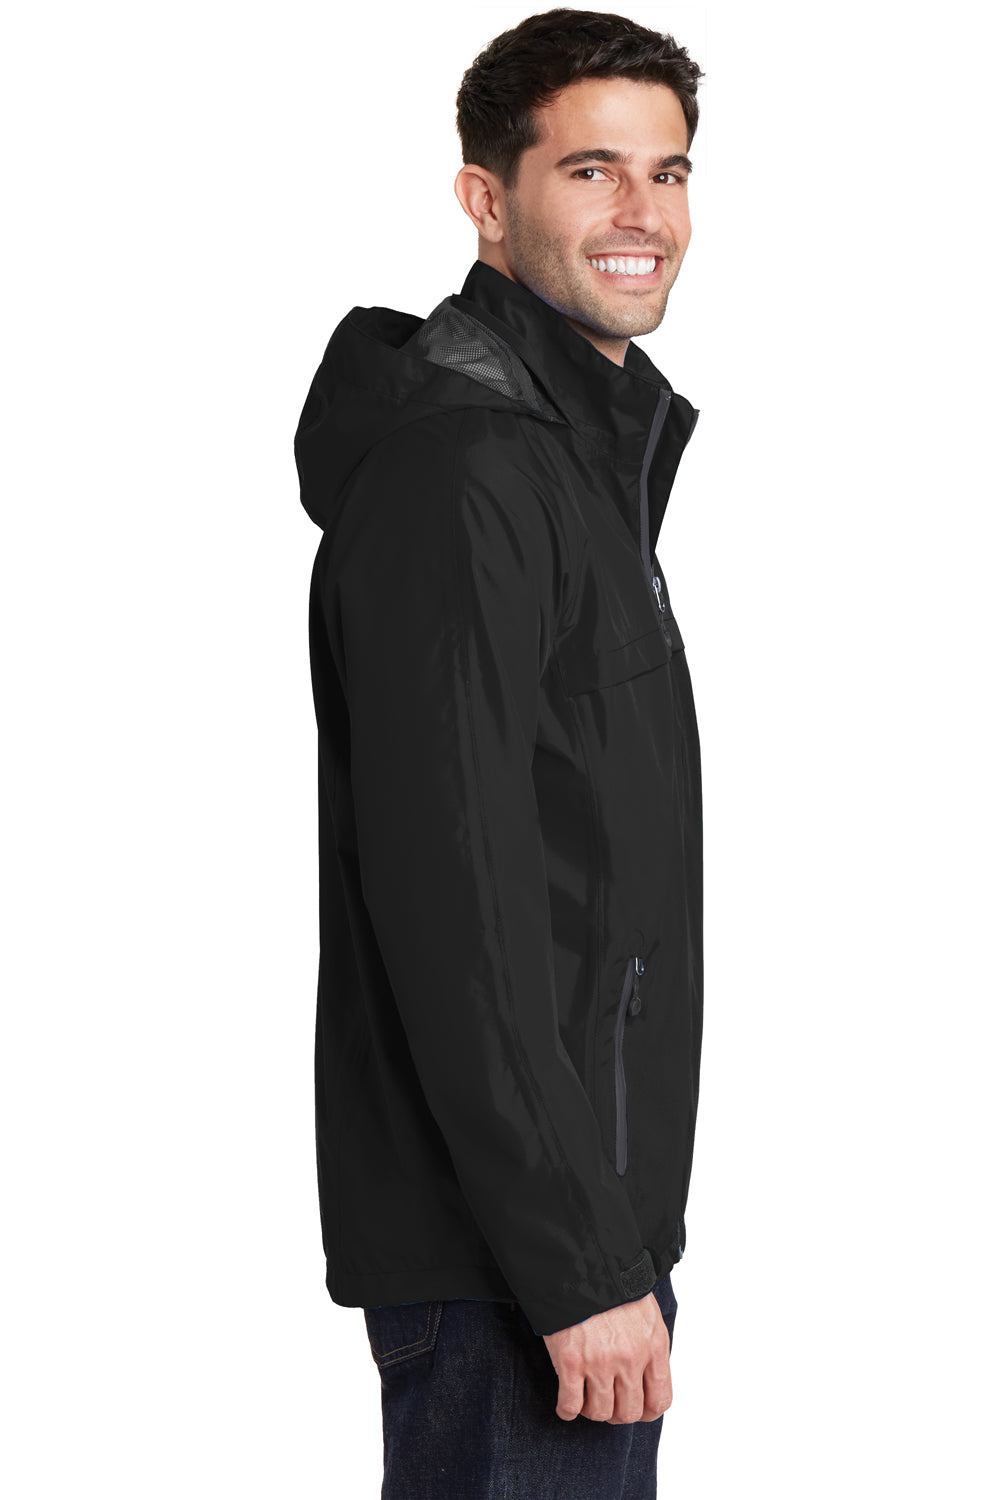 Port Authority J333 Mens Torrent Waterproof Full Zip Hooded Jacket Black Side